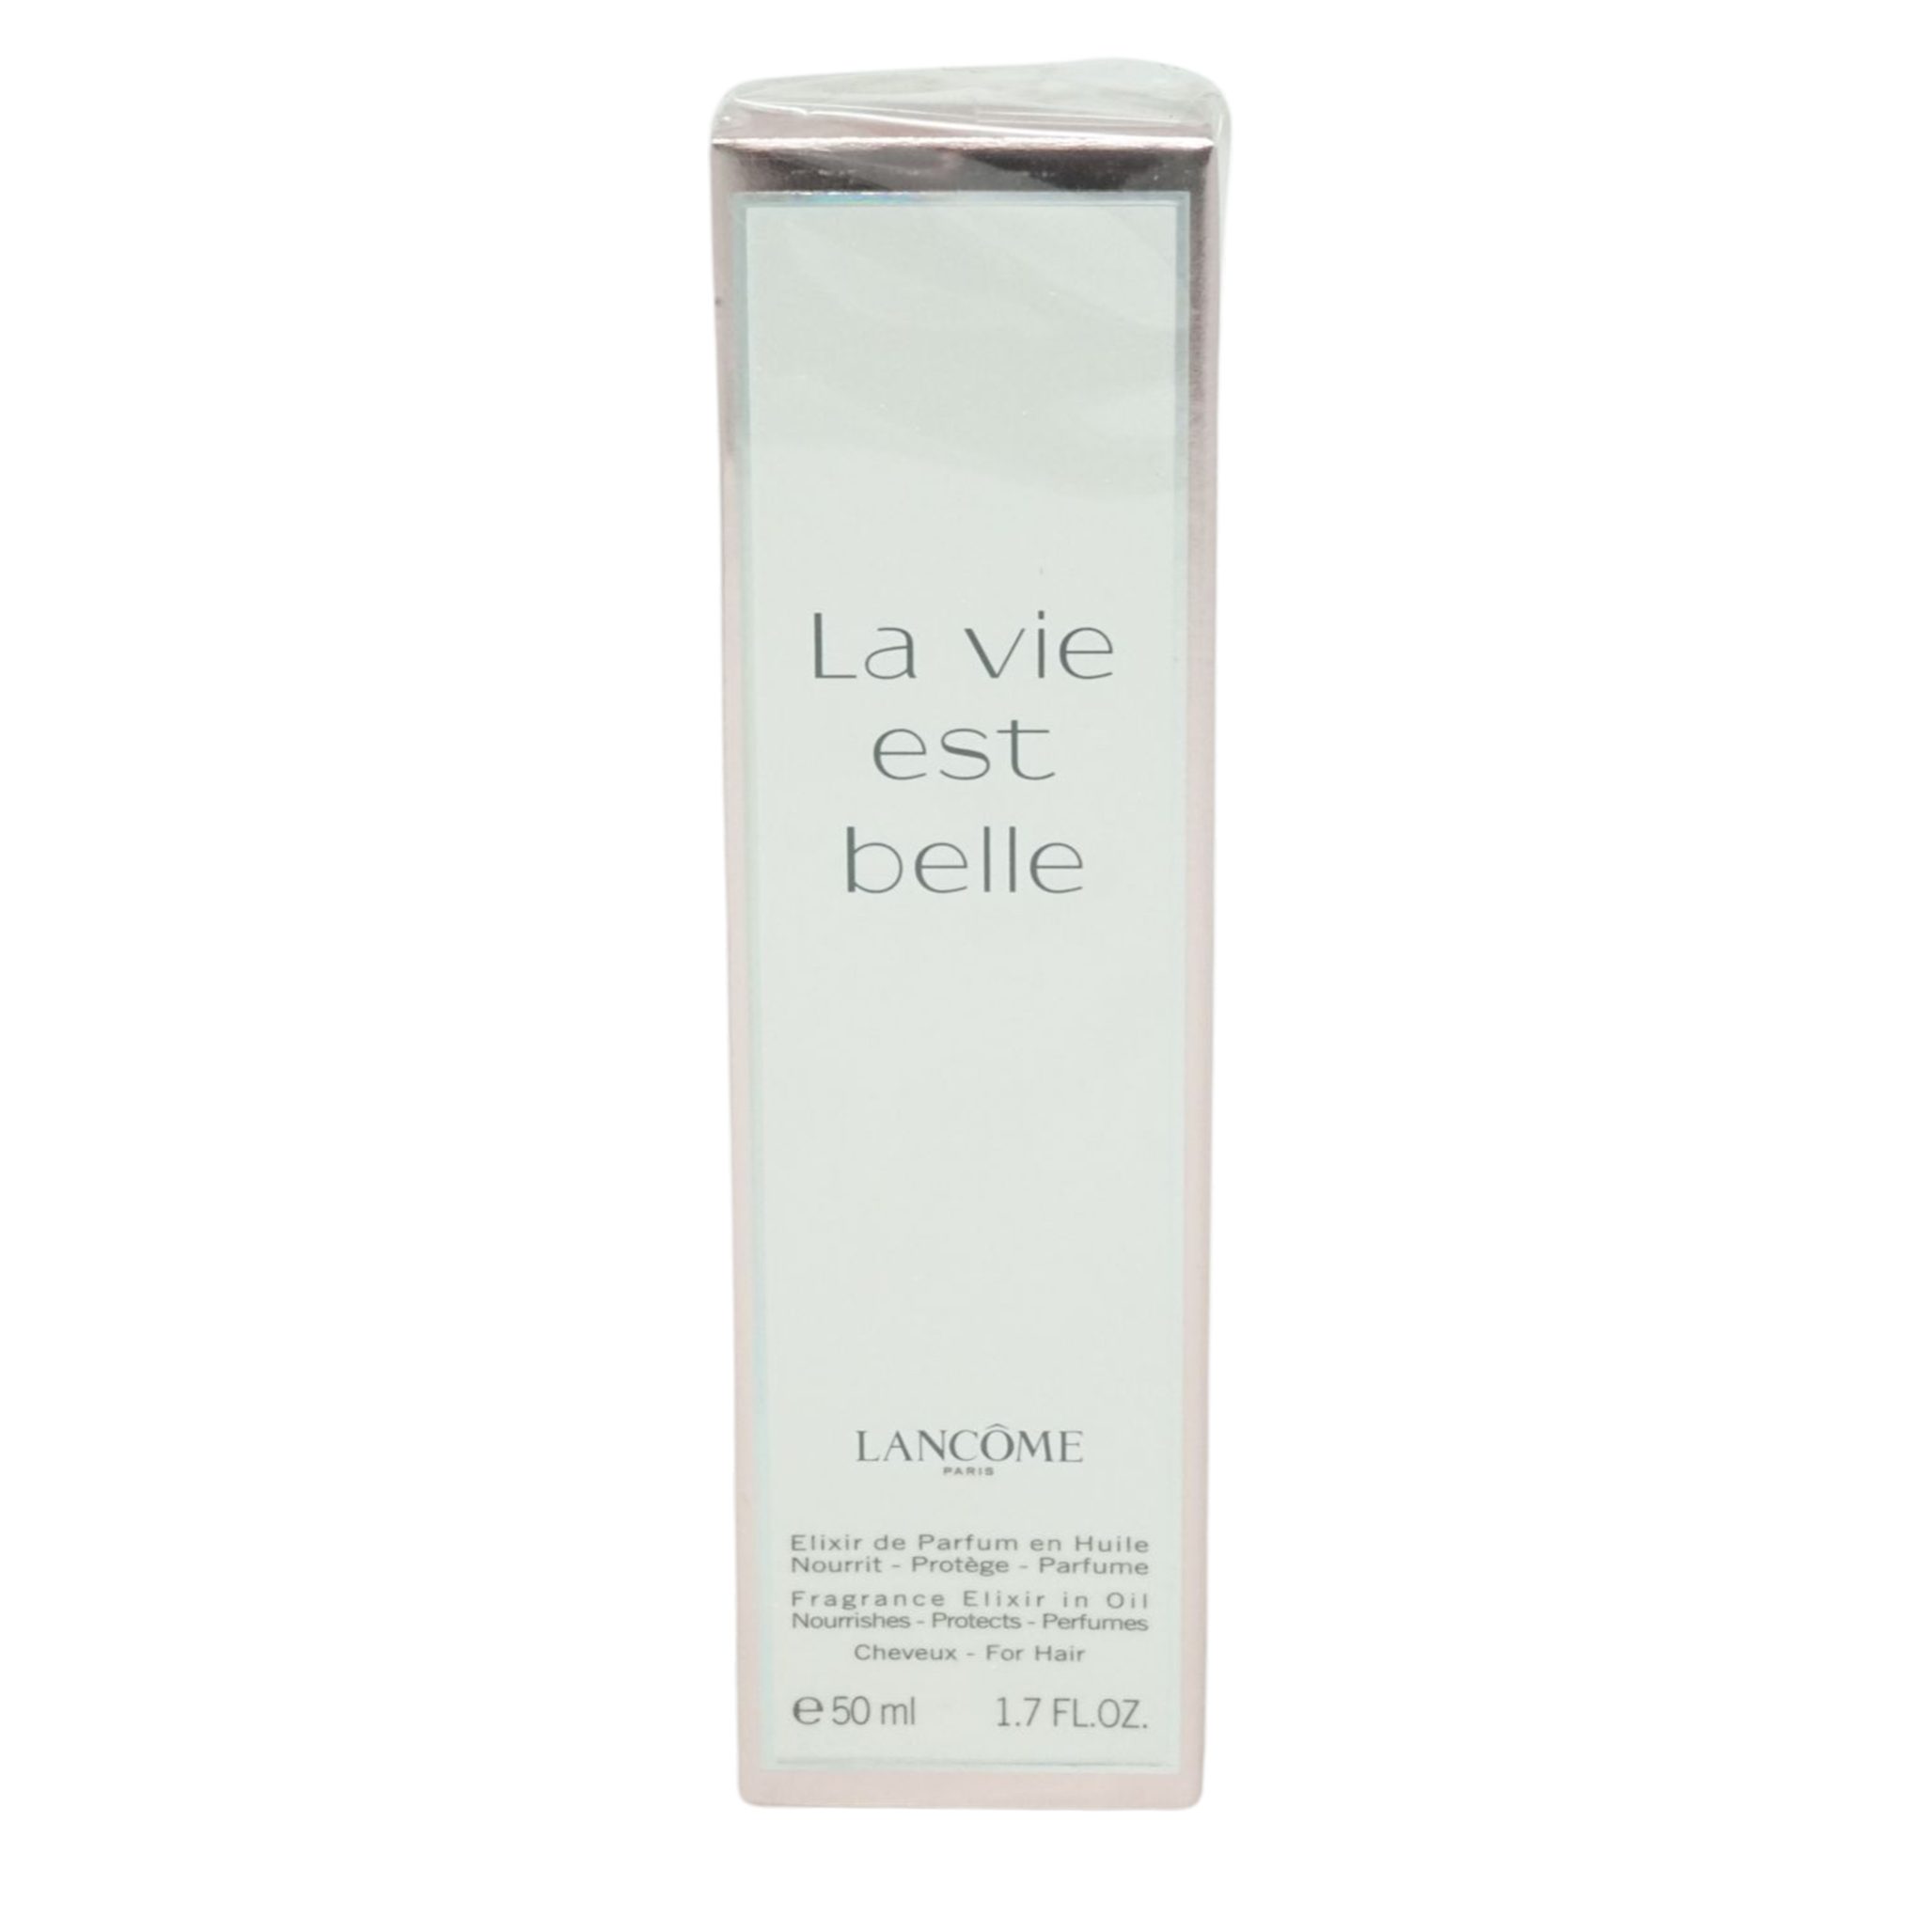 LANCOME Öl-Parfüm Lancome La vie est belle Elixir de Parfum Haaröl 50ml